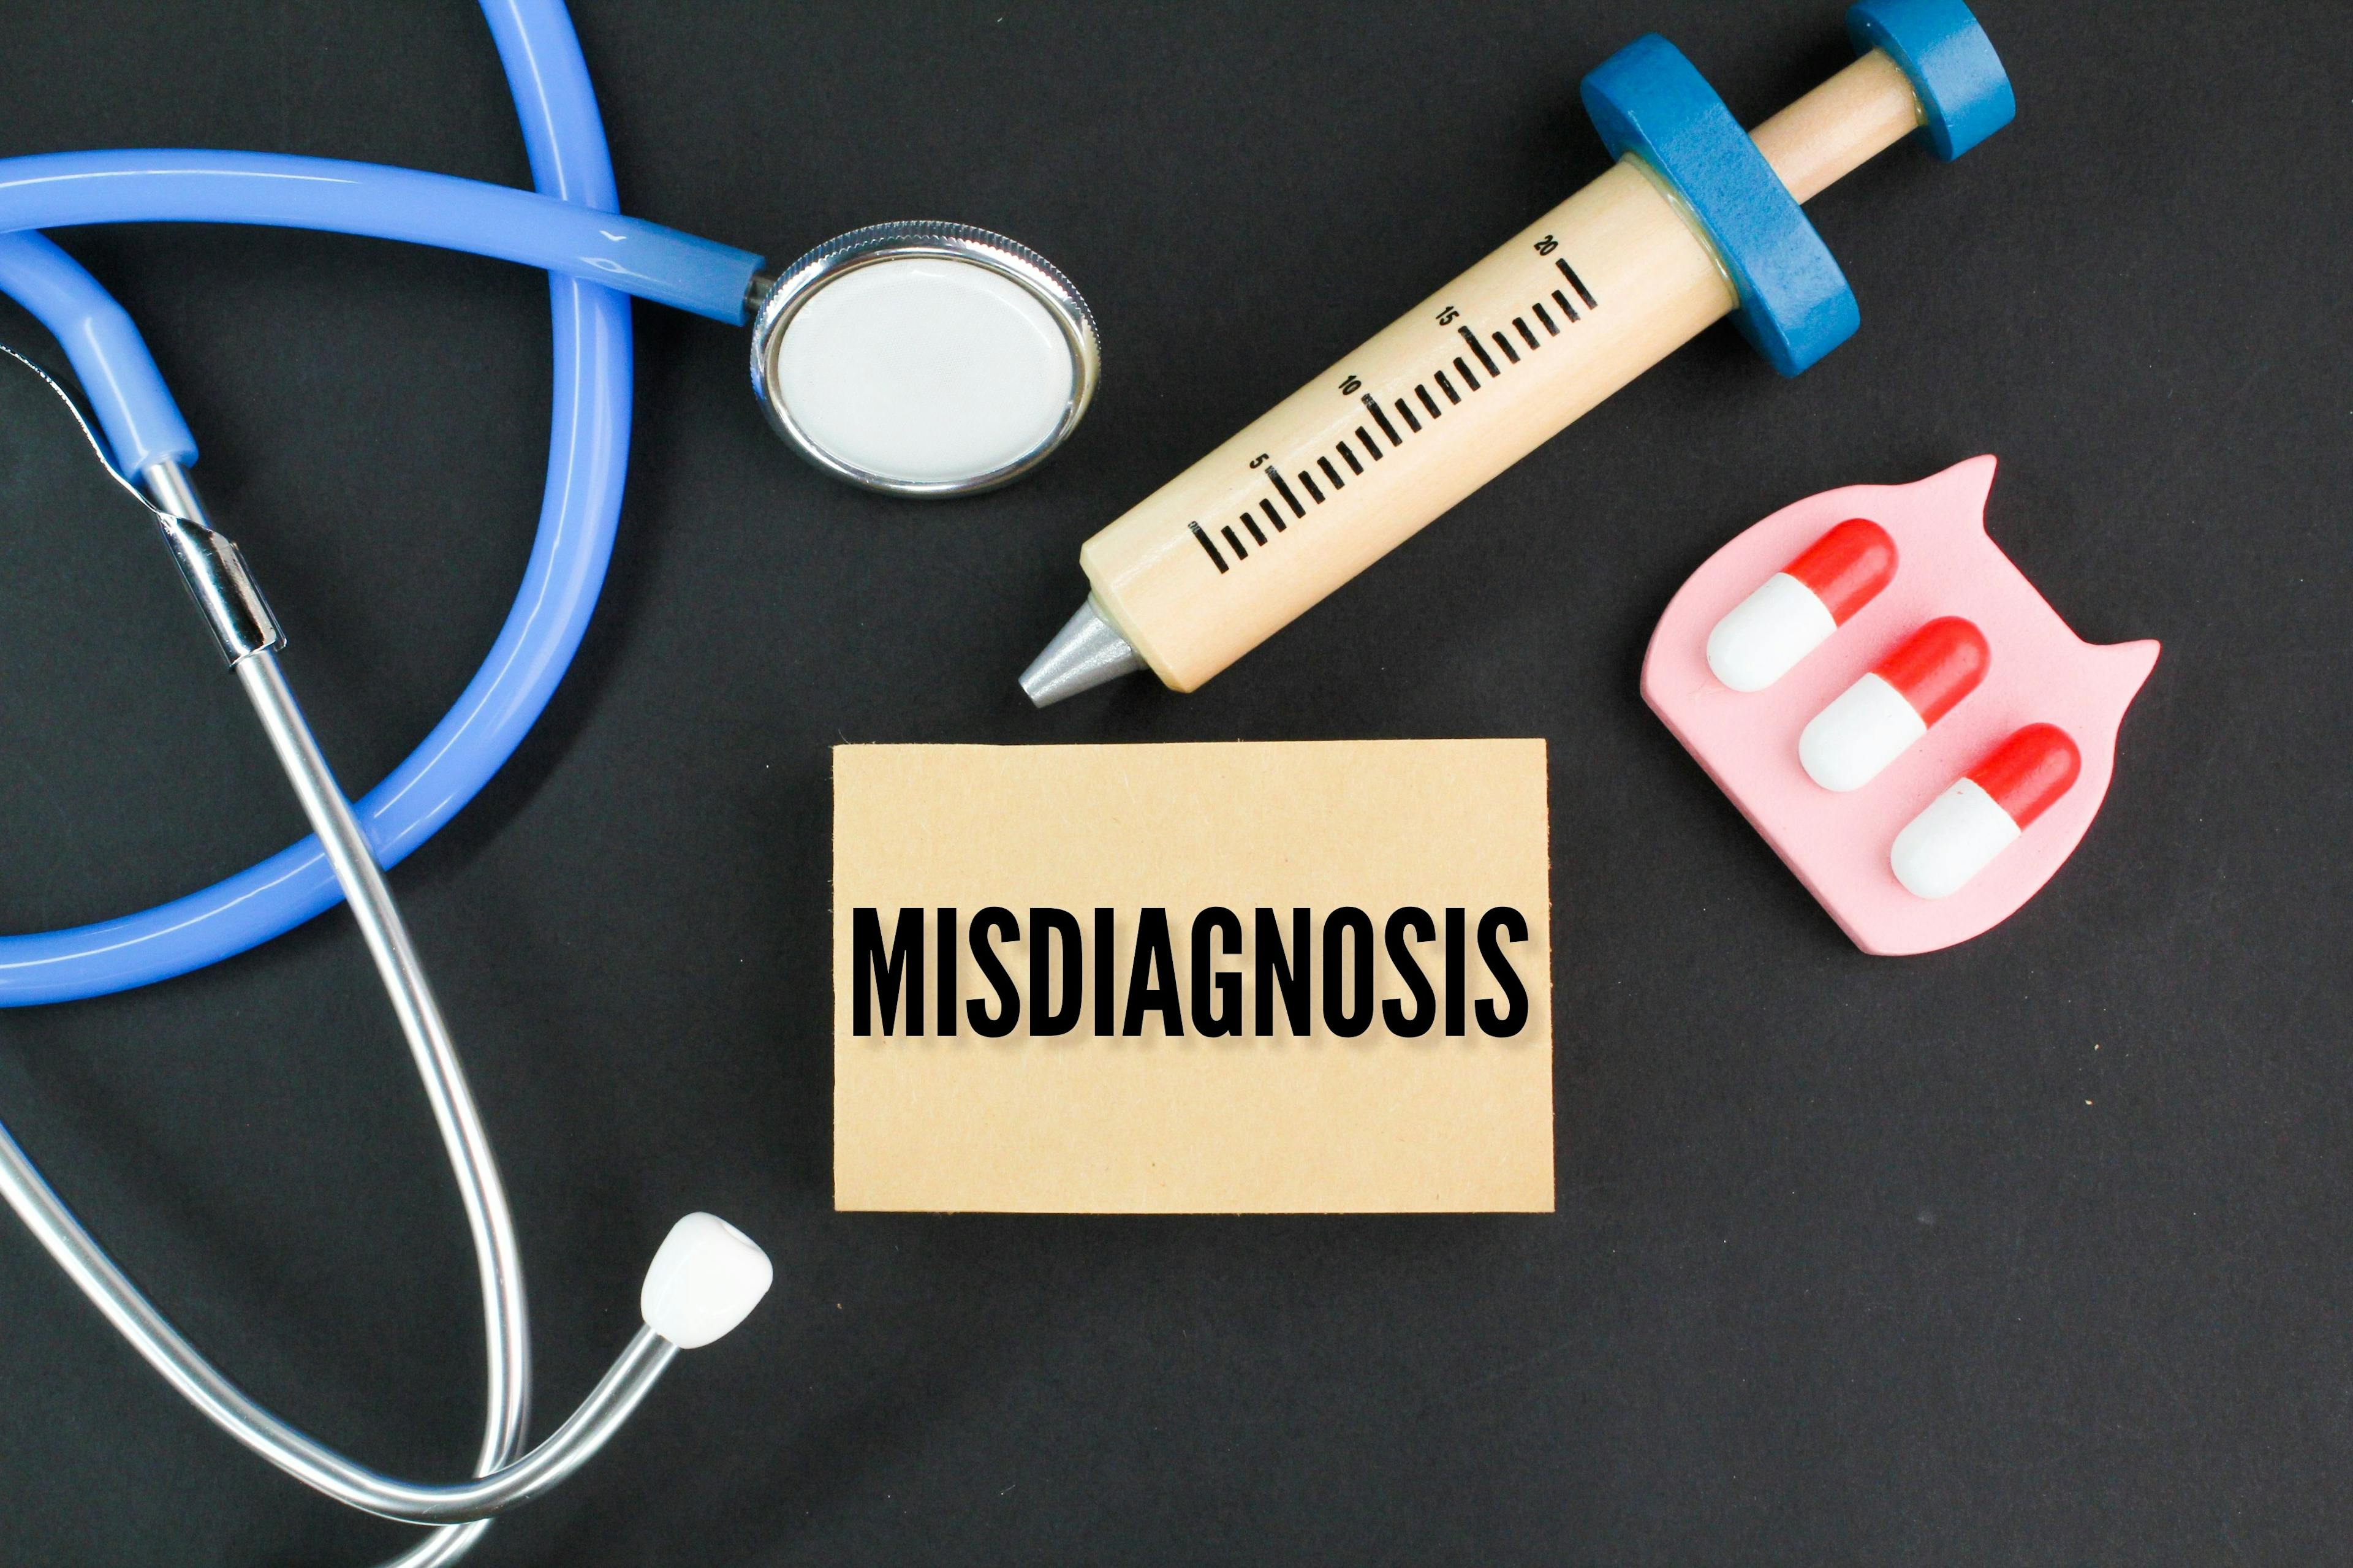 Misdiagnosis Text, Stethoscope, Syringe, Medication | image credit: Fauzi - stock.adobe.com